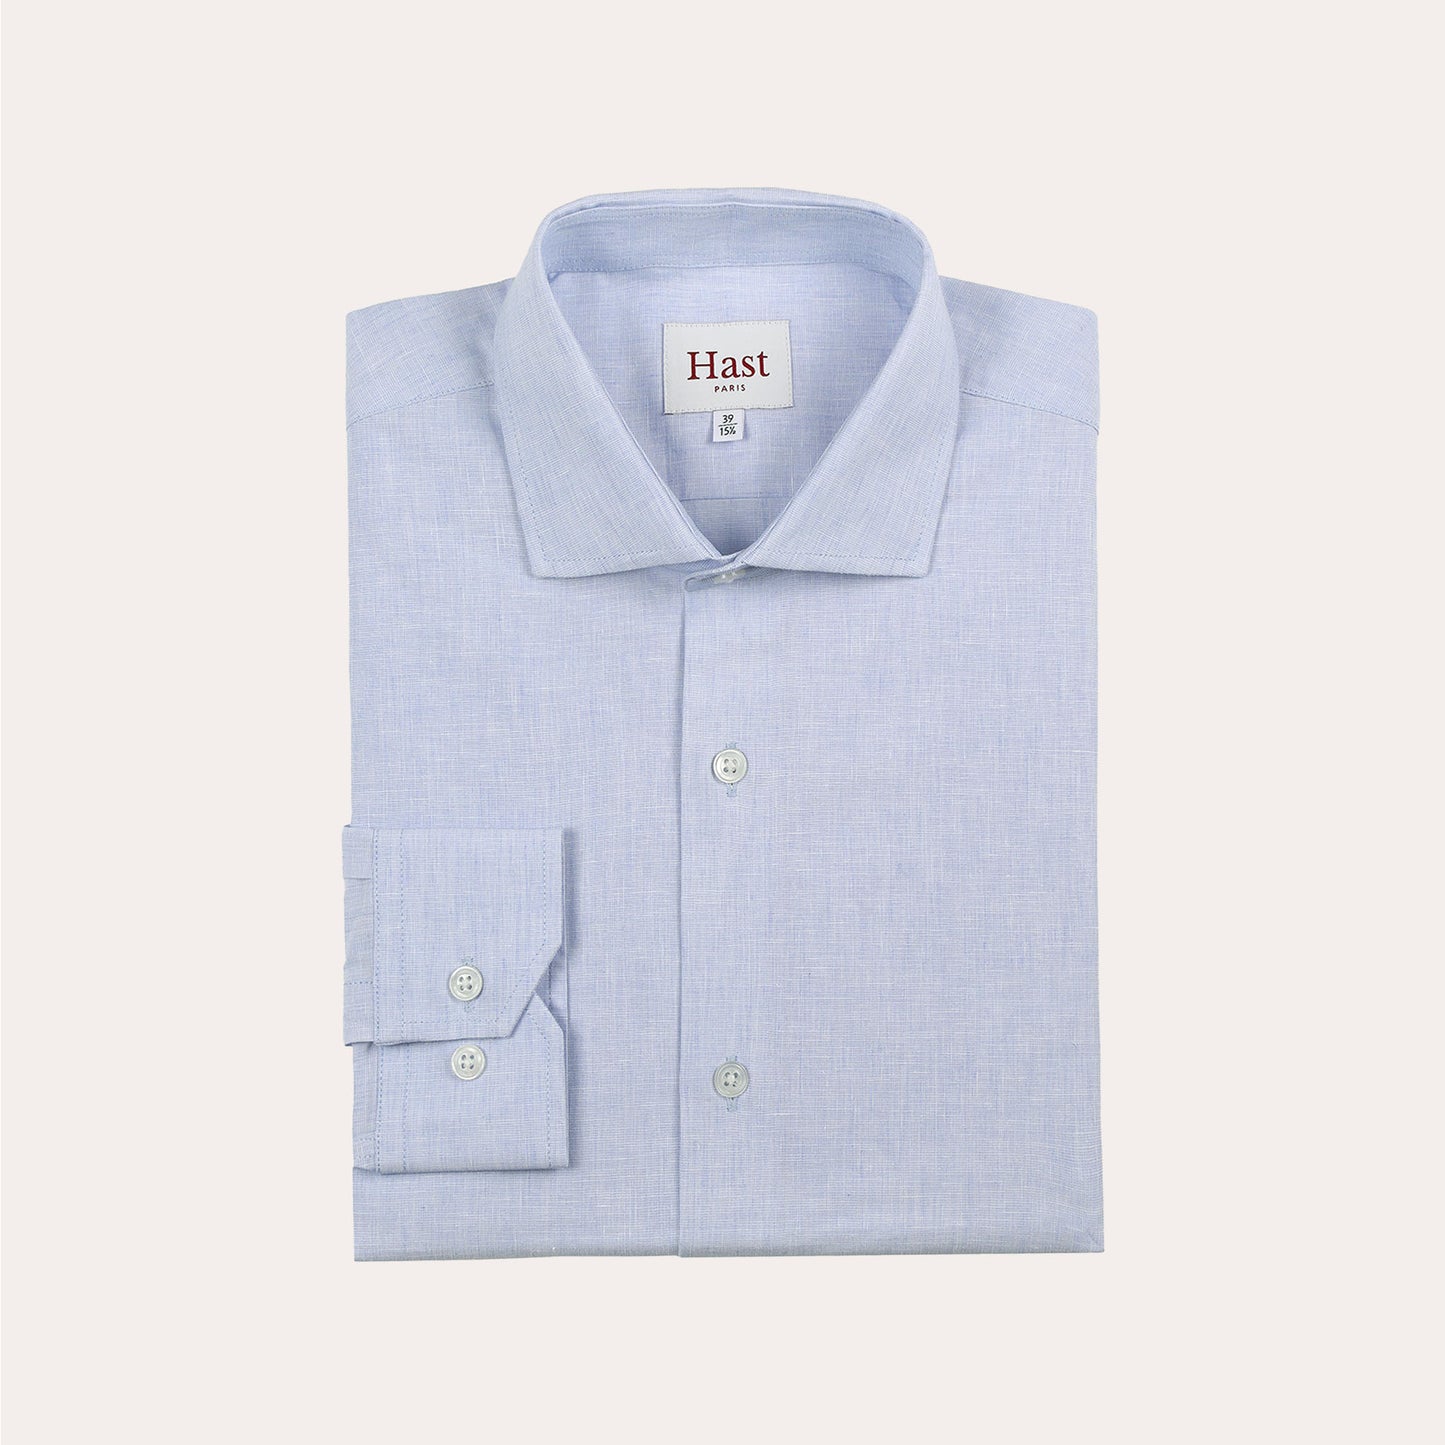 Sky blue cotton and linen shirt